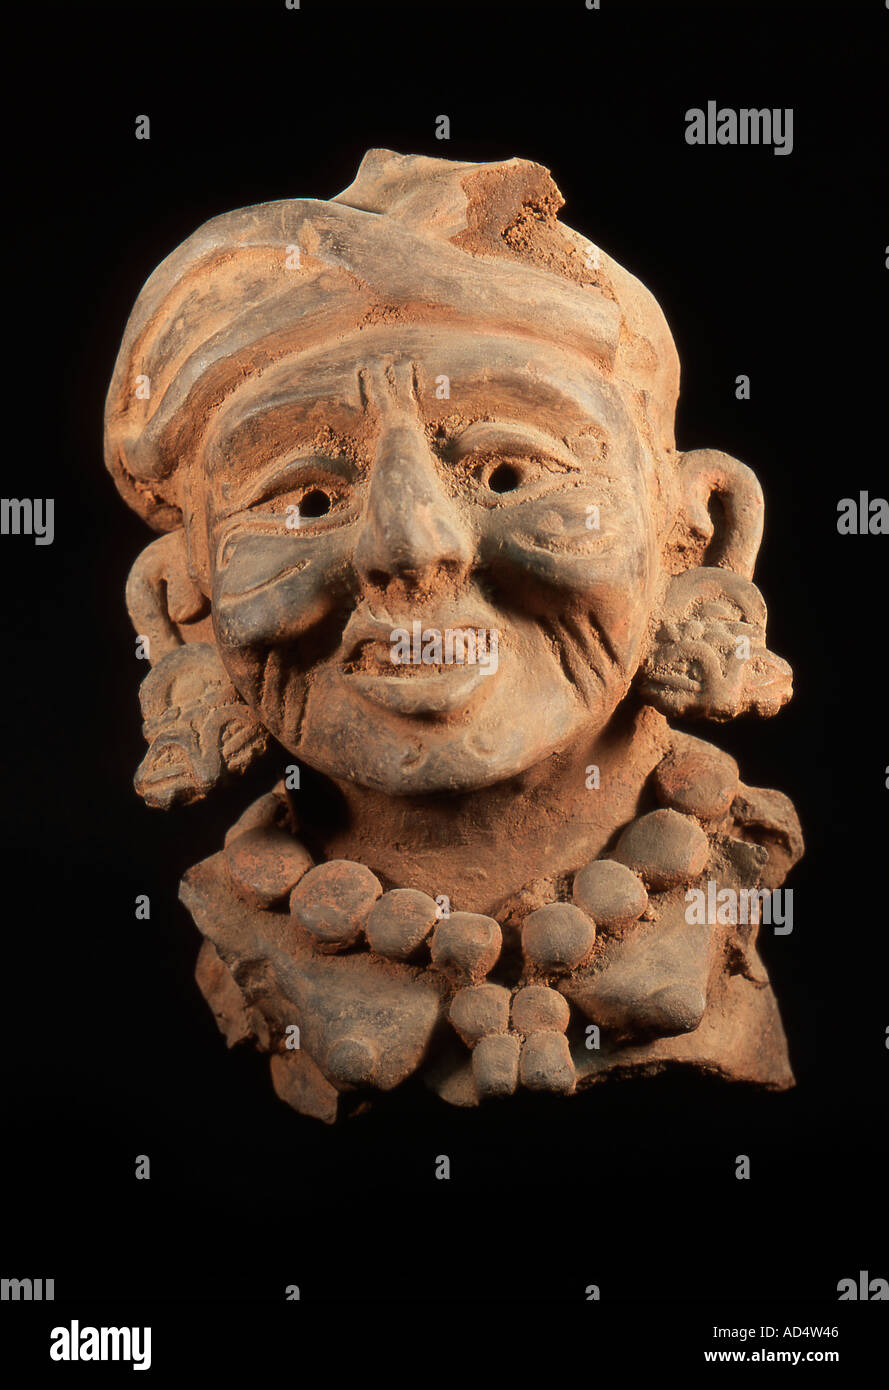 Mexique Oaxaca artefact d'une vieille femme de la fin de phase Xoo 600-800 AD avec le signe de la planète Vénus dans le tiroir de l'oreille Banque D'Images